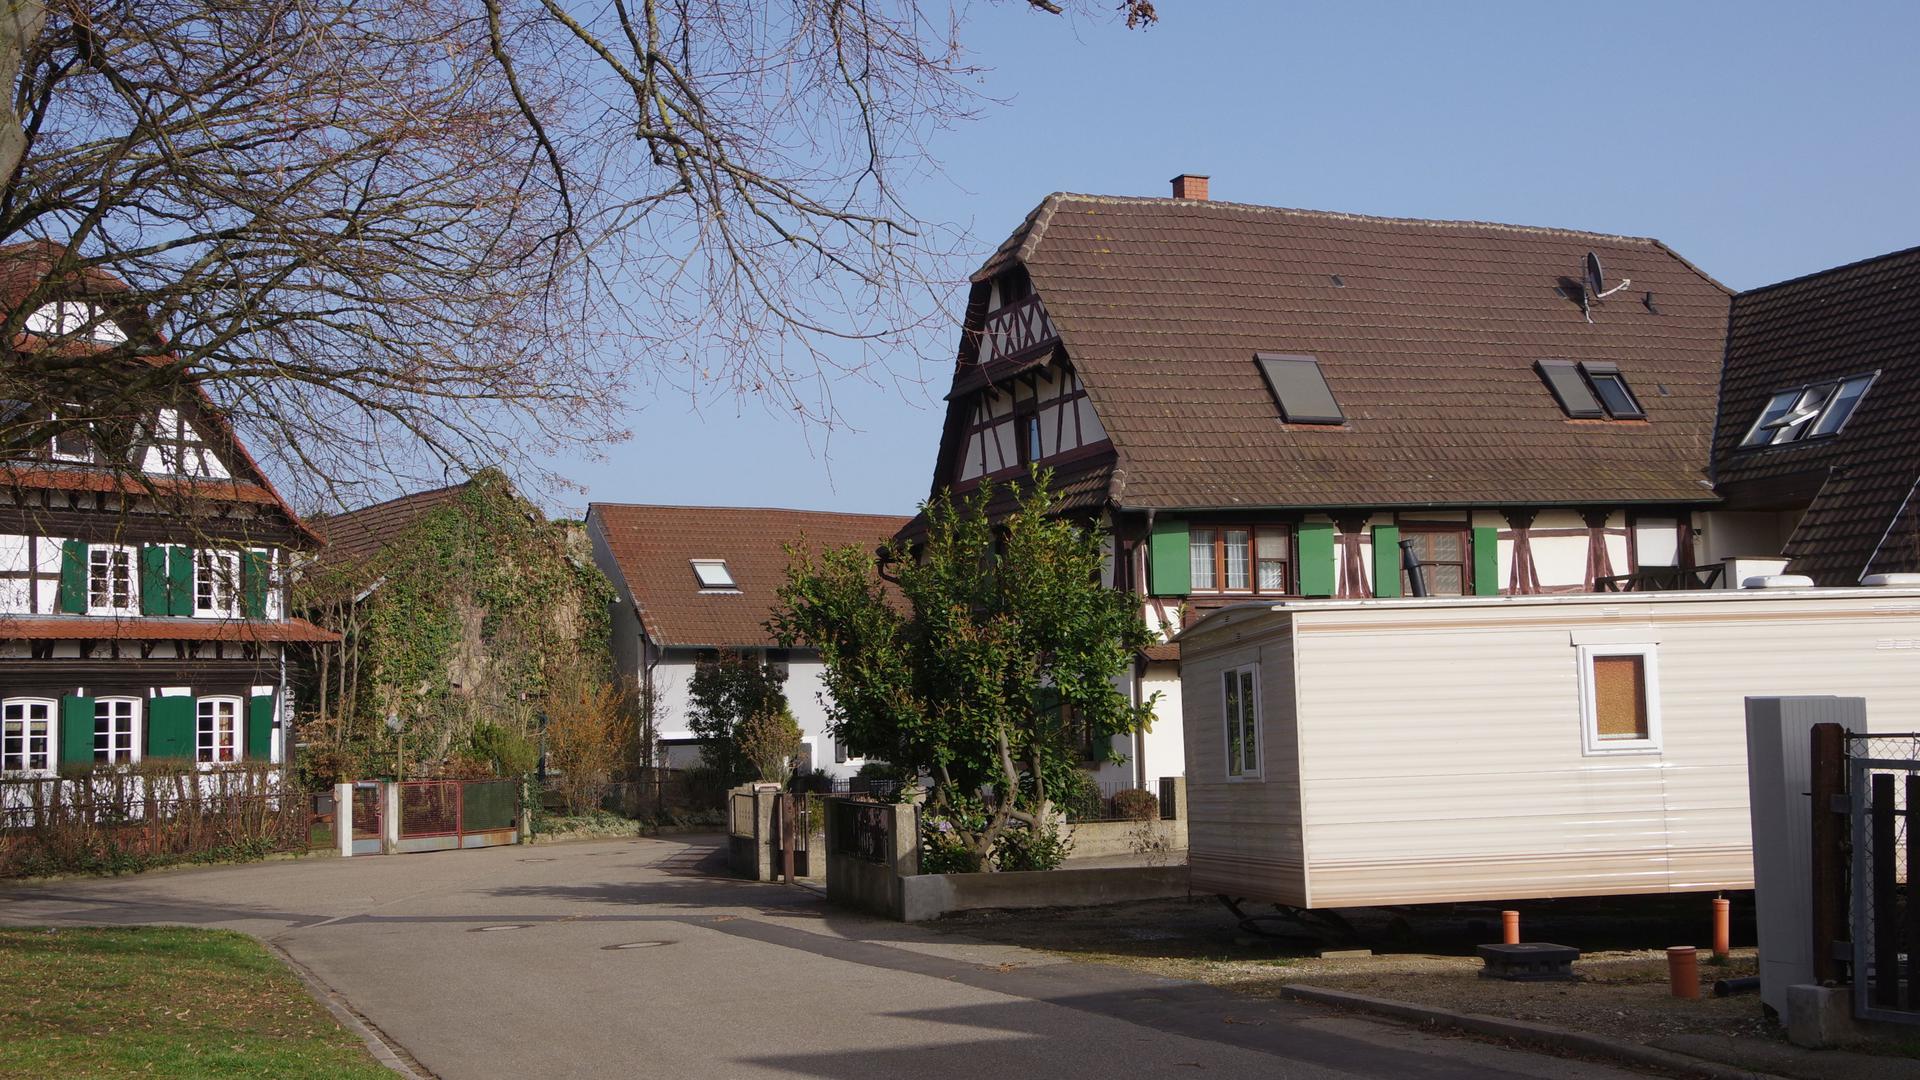 Ein derzeit zunächst nur abgestelltes Mobilhome erregt in Rheinbischofsheim die Gemüter. Der Besitzer plant darin eine barrierefreie Wohnung für seinen Vater.
